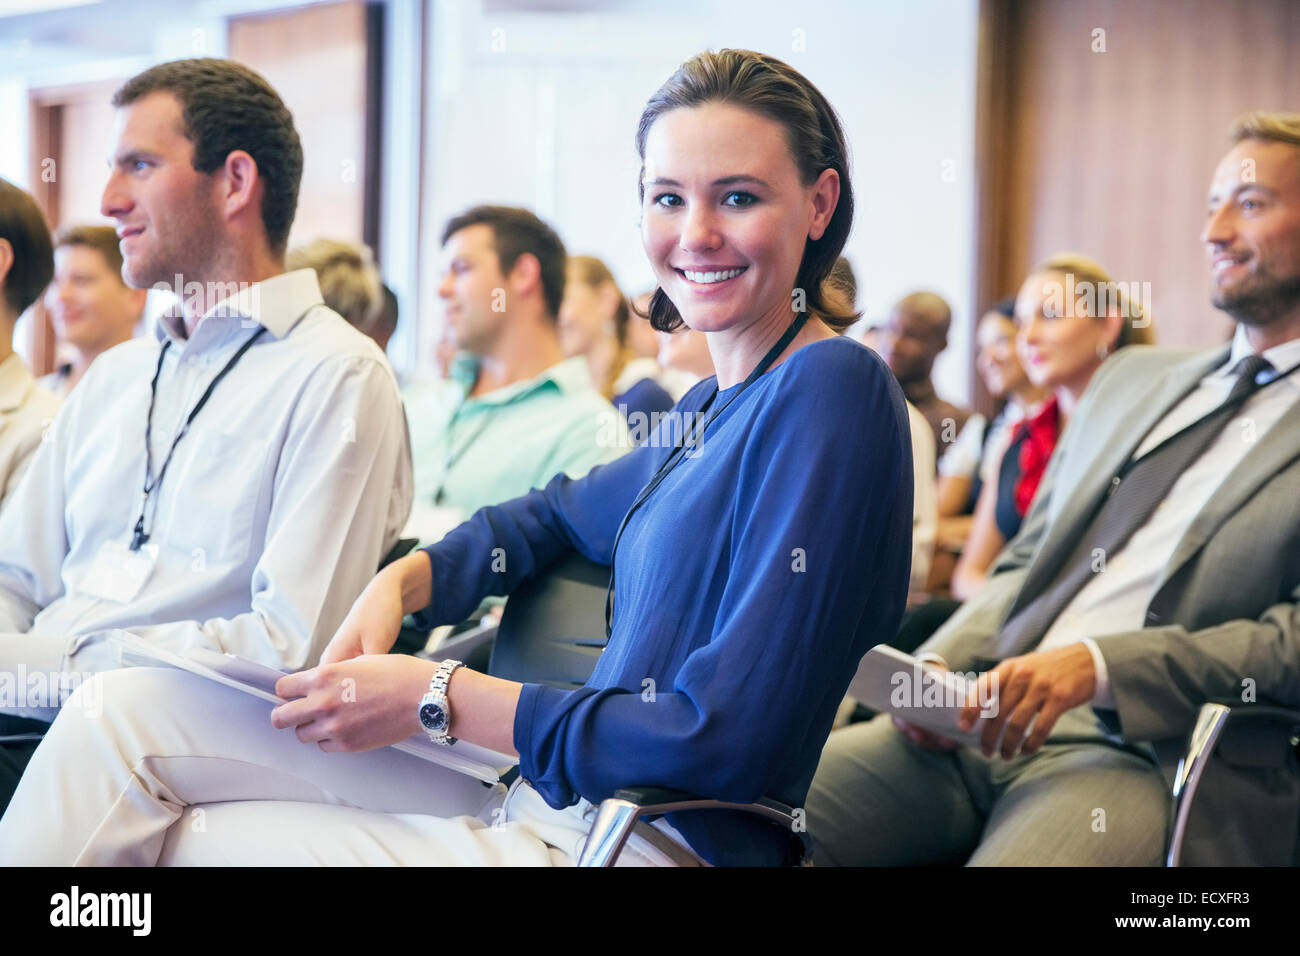 Portrait of smiling young woman sitting en audience dans la salle de conférence Banque D'Images